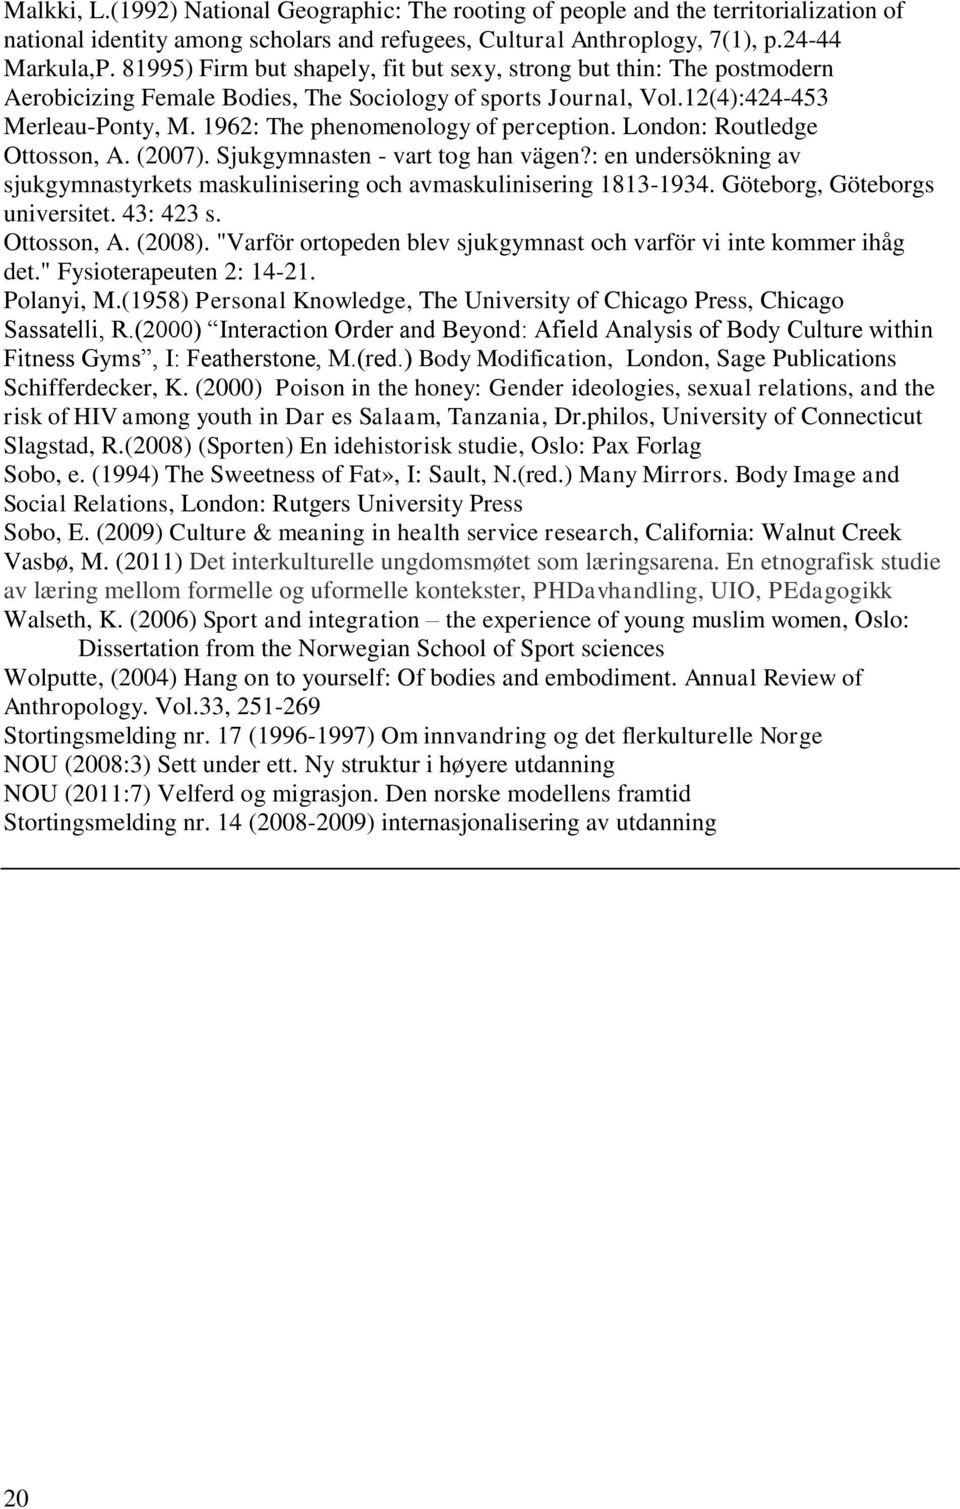 1962: The phenomenology of perception. London: Routledge Ottosson, A. (2007). Sjukgymnasten - vart tog han vägen?: en undersökning av sjukgymnastyrkets maskulinisering och avmaskulinisering 1813-1934.